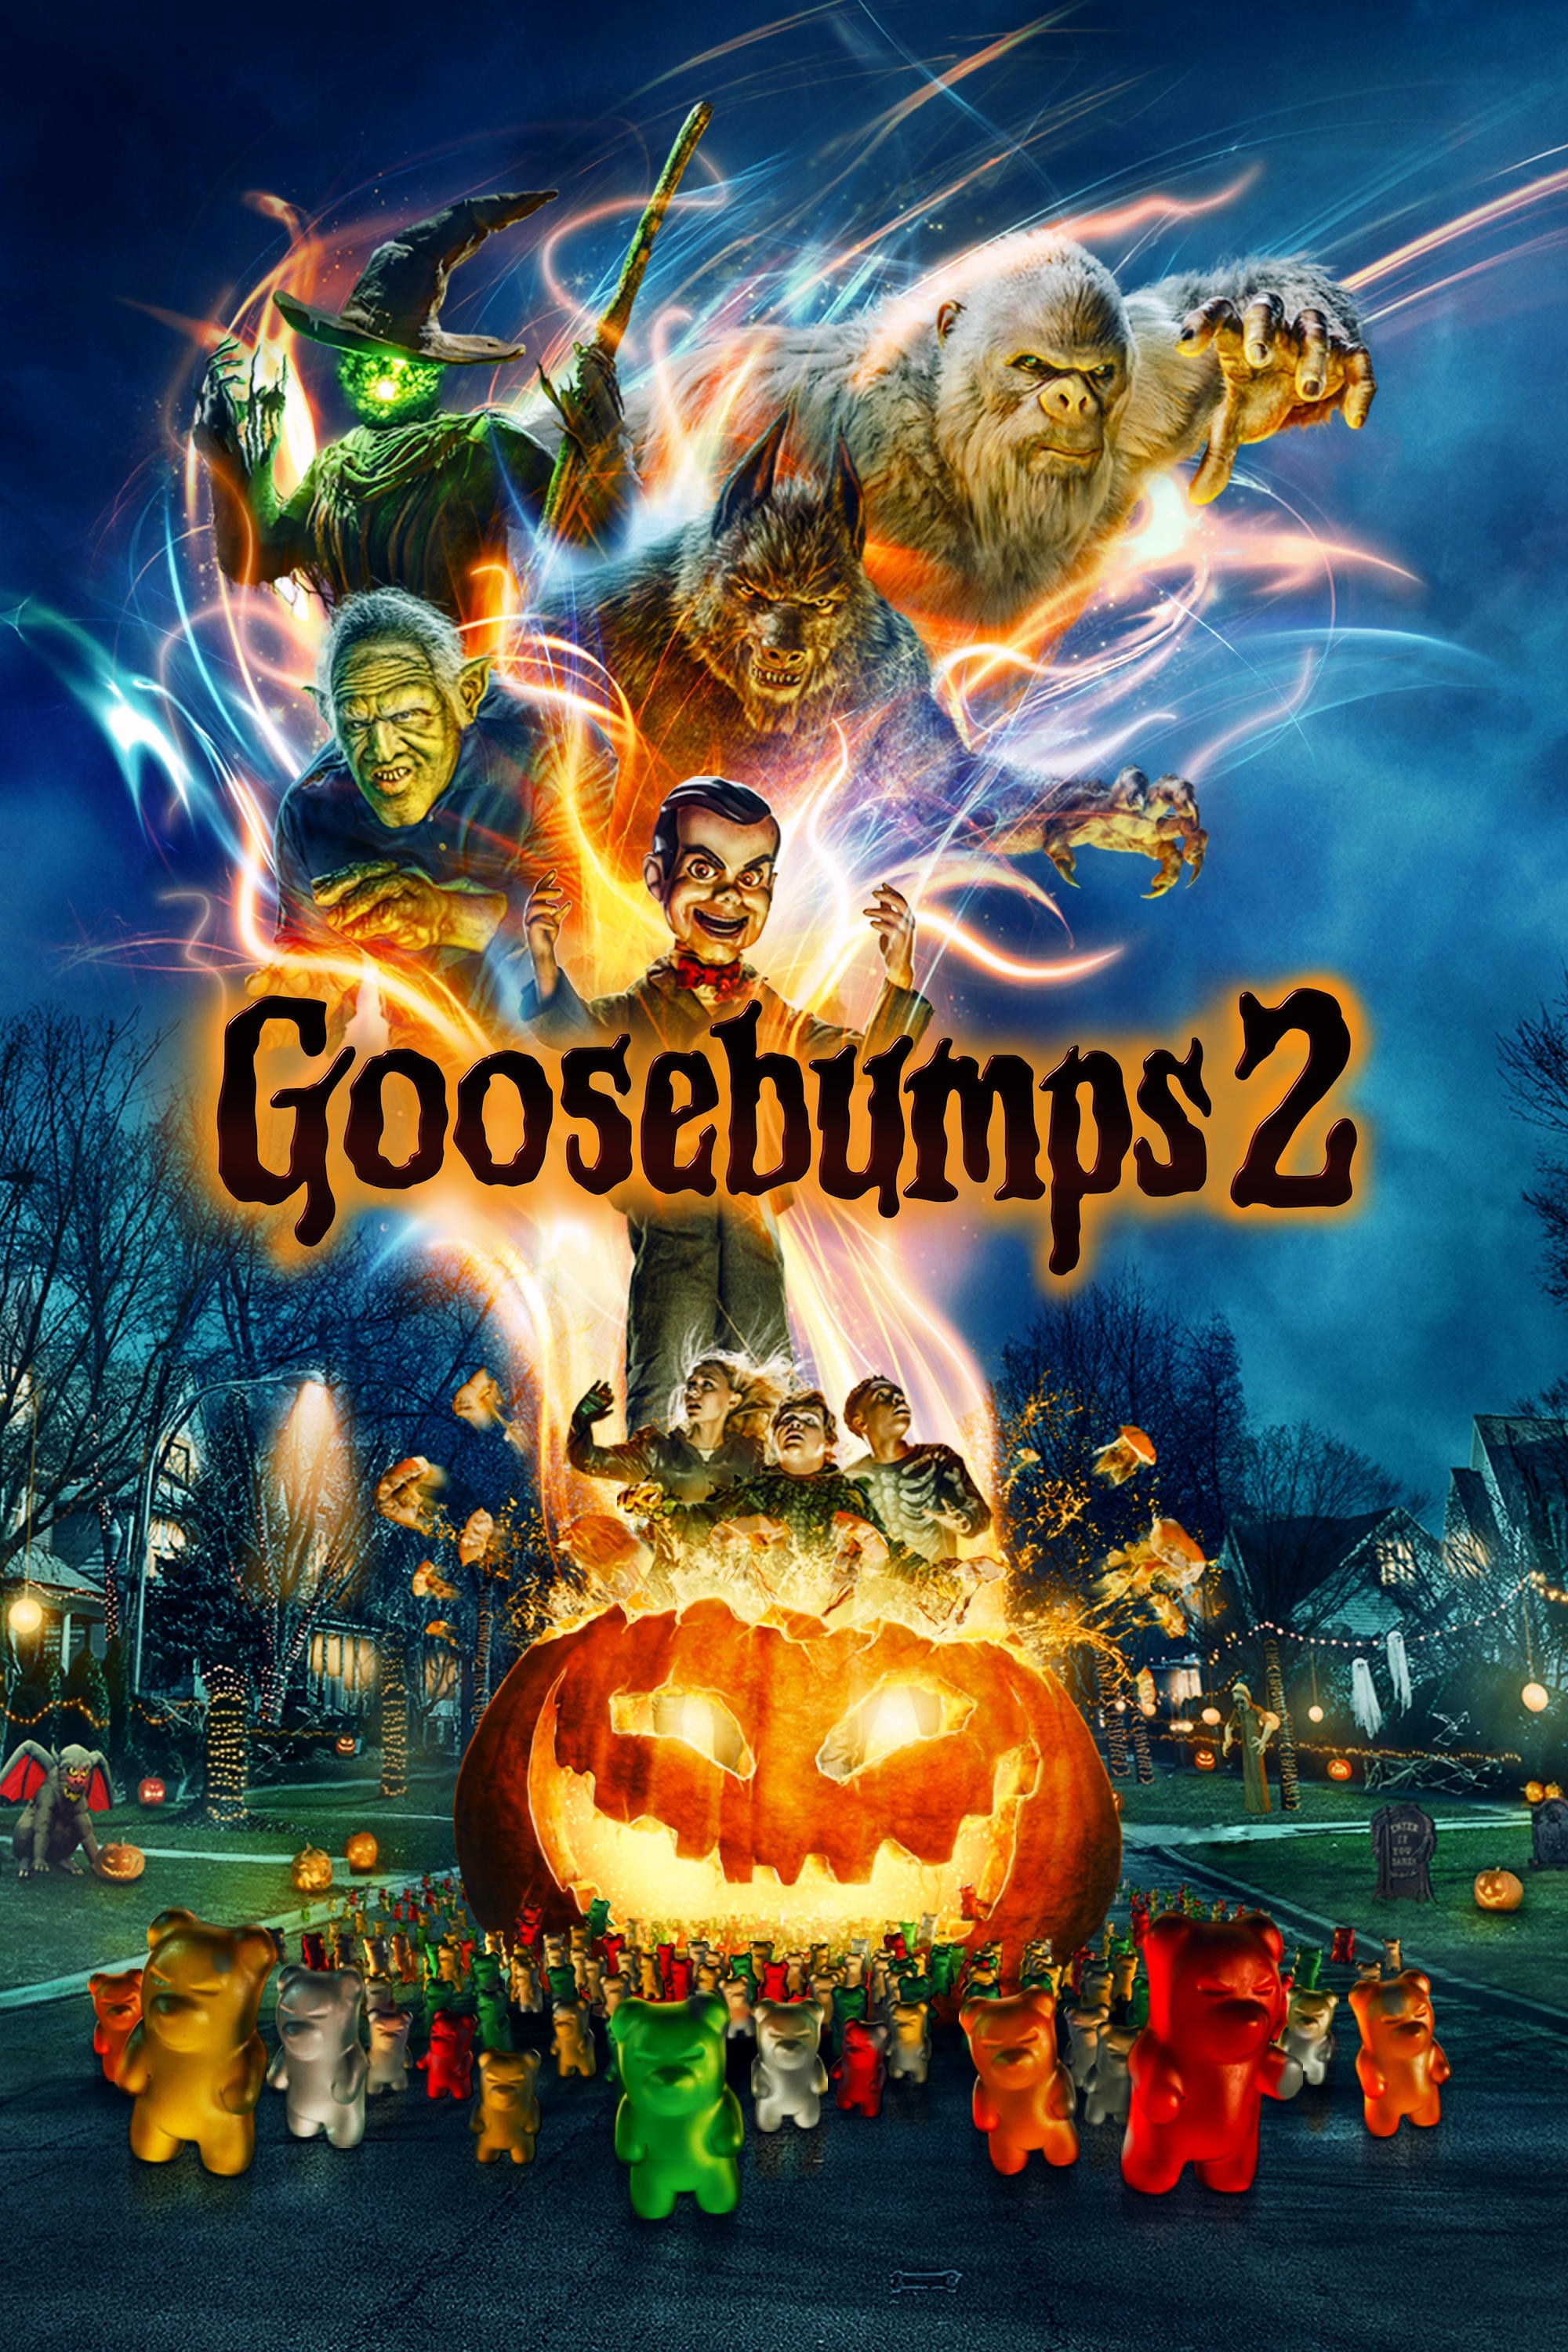 Goosebumps 2 Haunted Halloween 2018 Movie Wallpapers